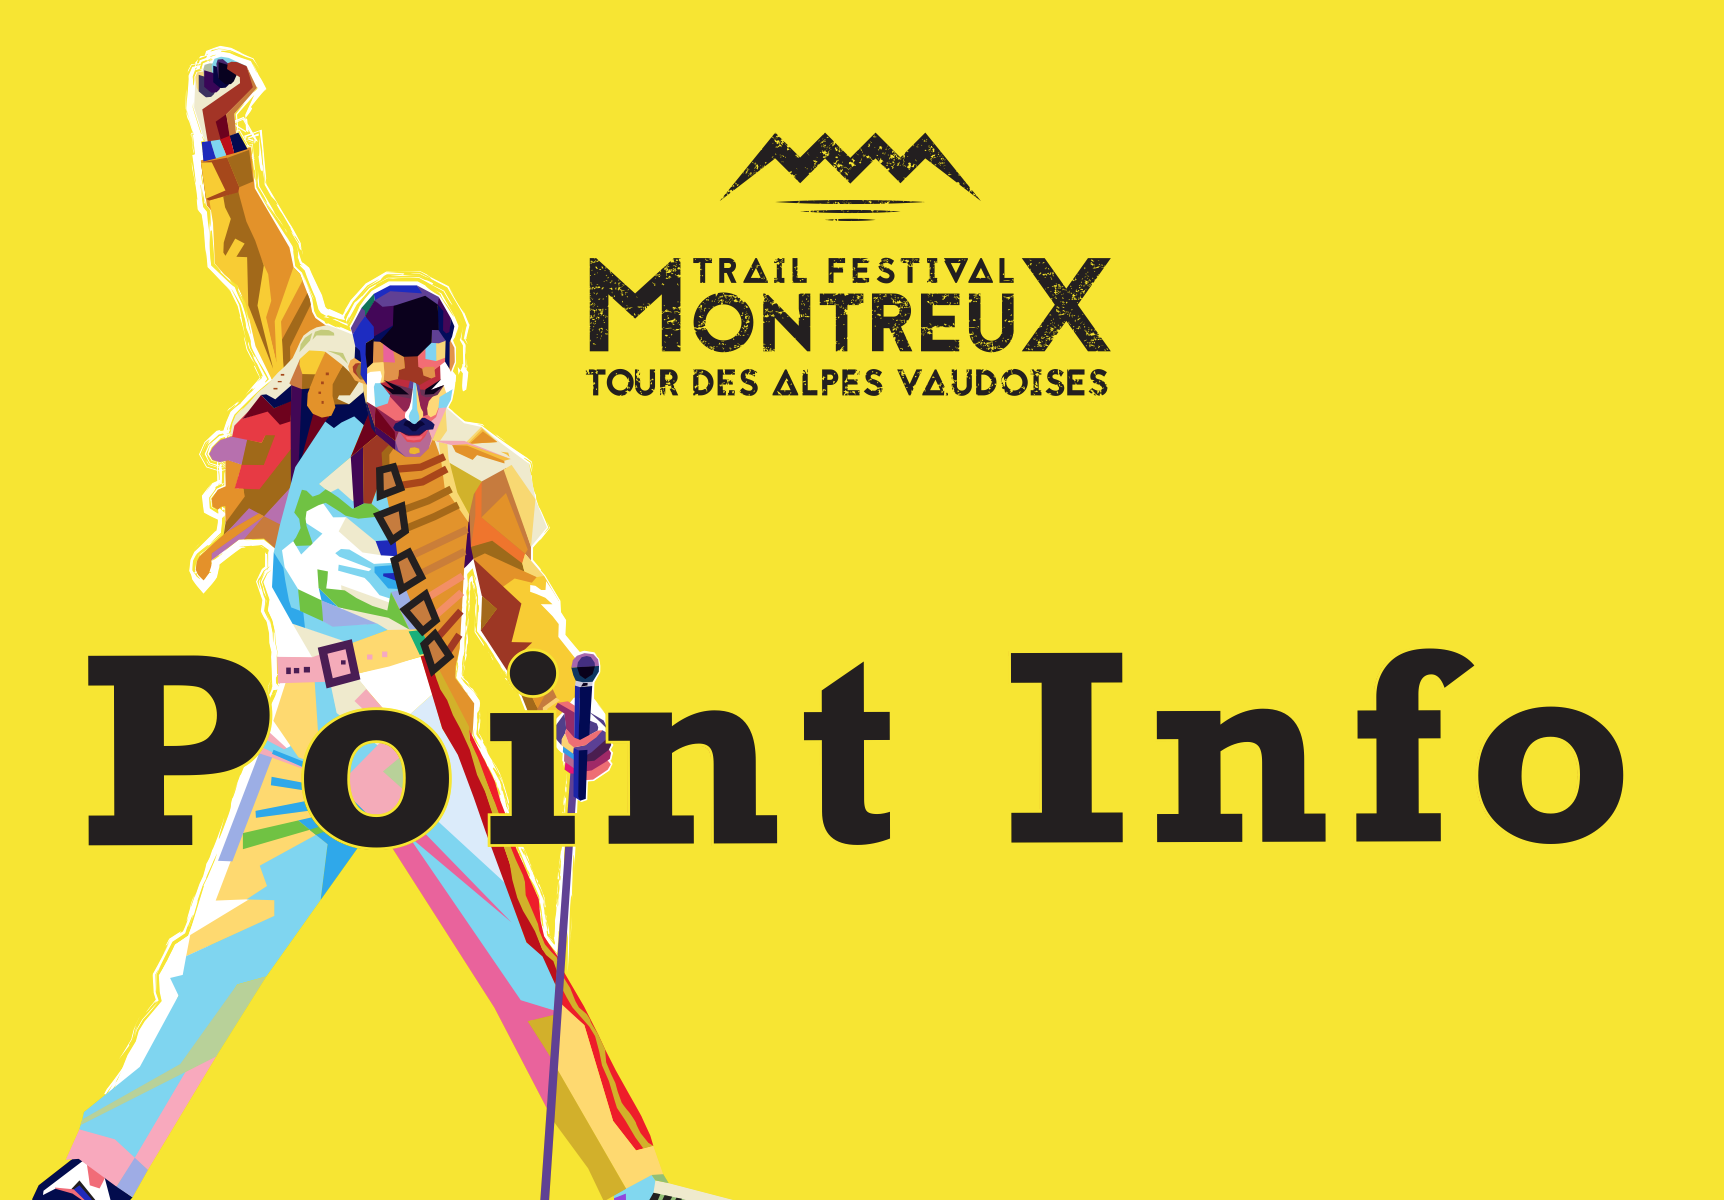 Montreux Trail Festival 2020